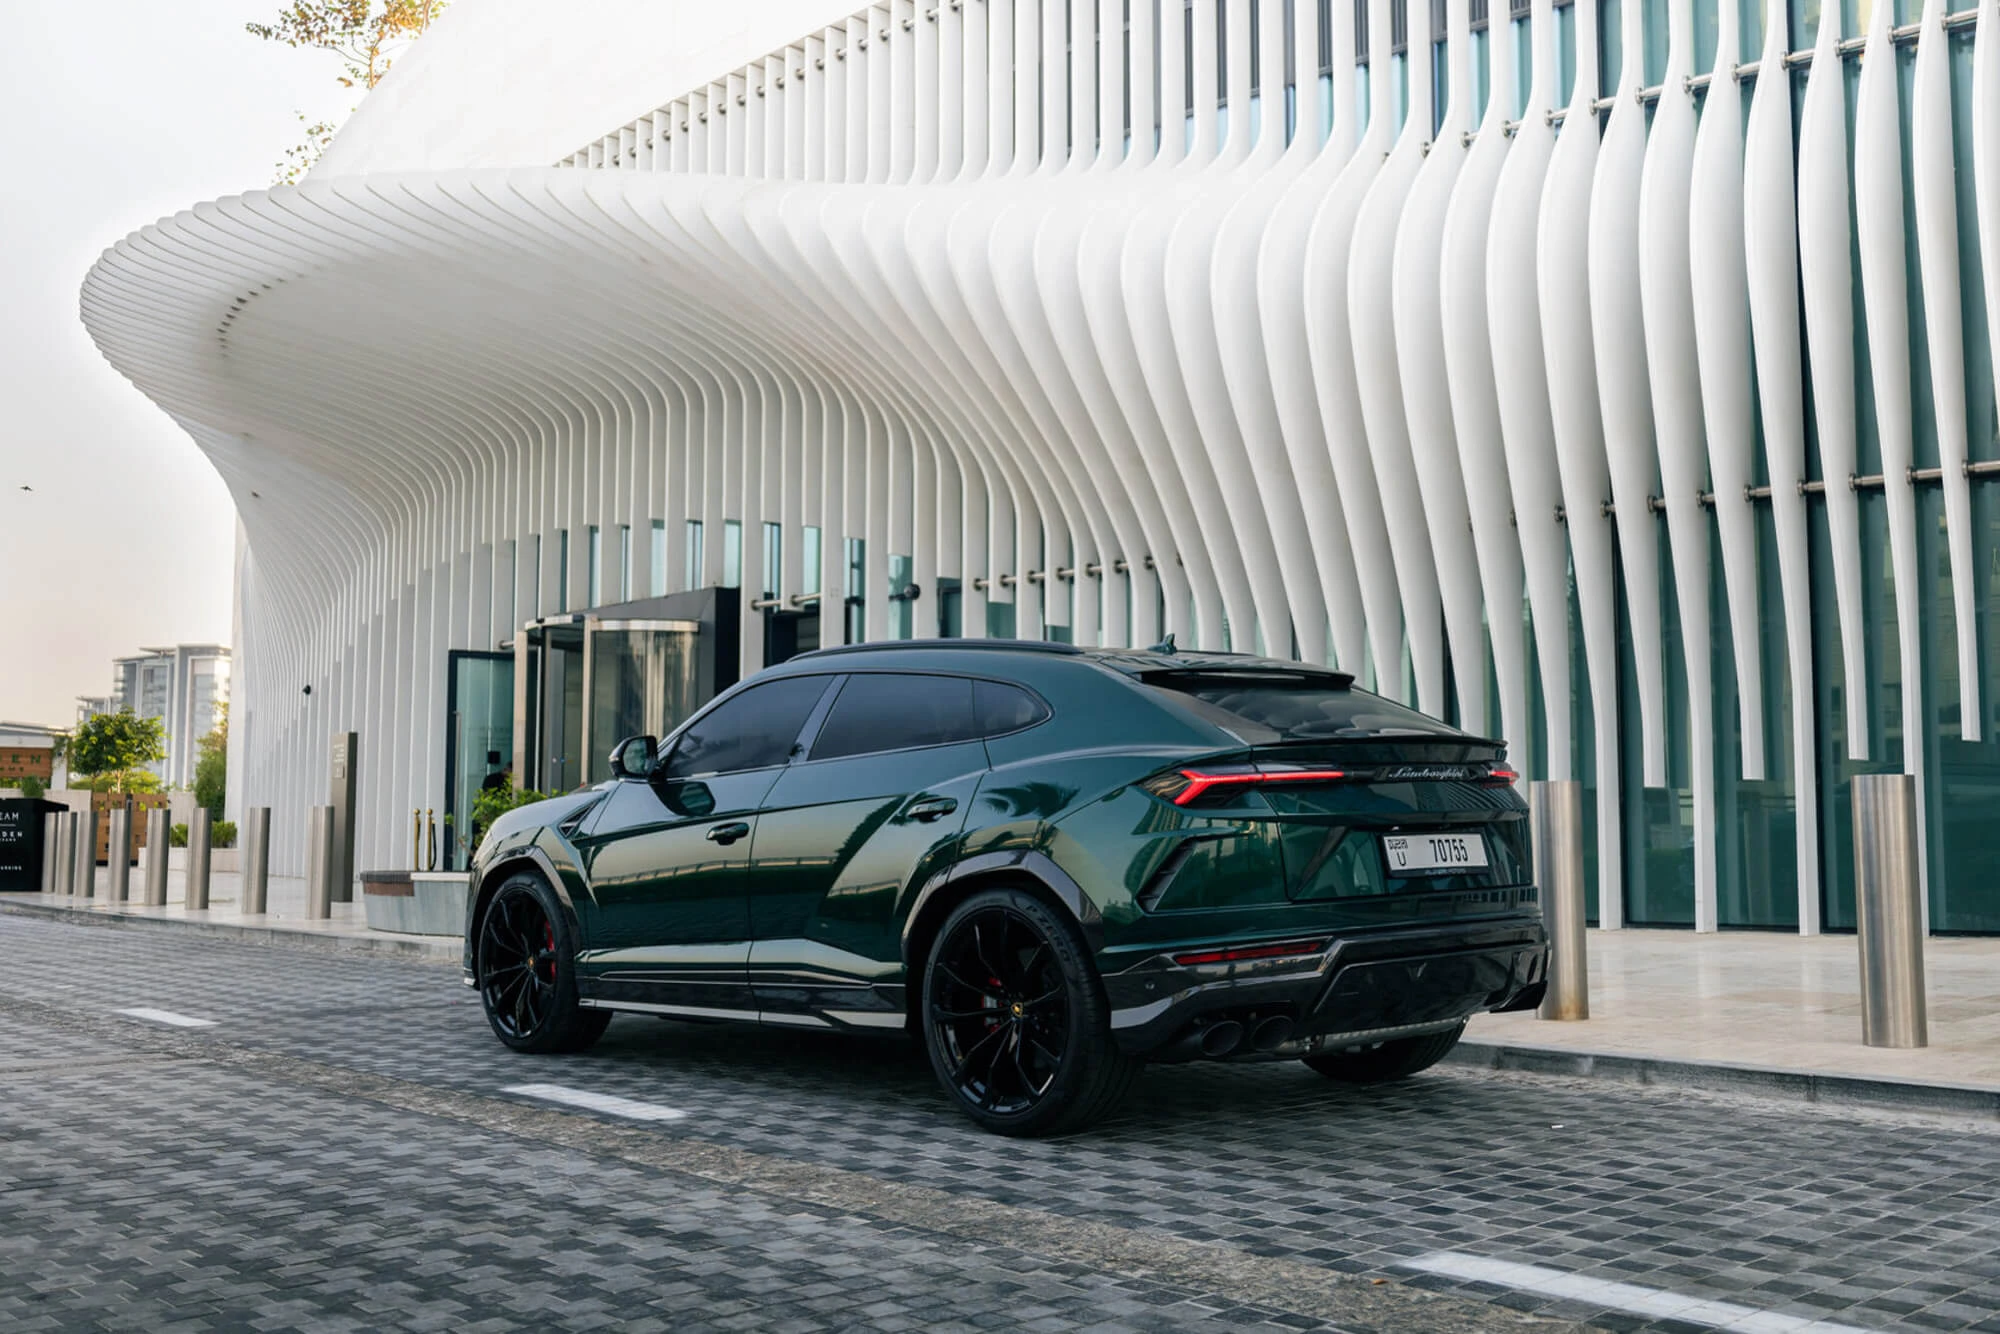 Lamborghini Urus Green